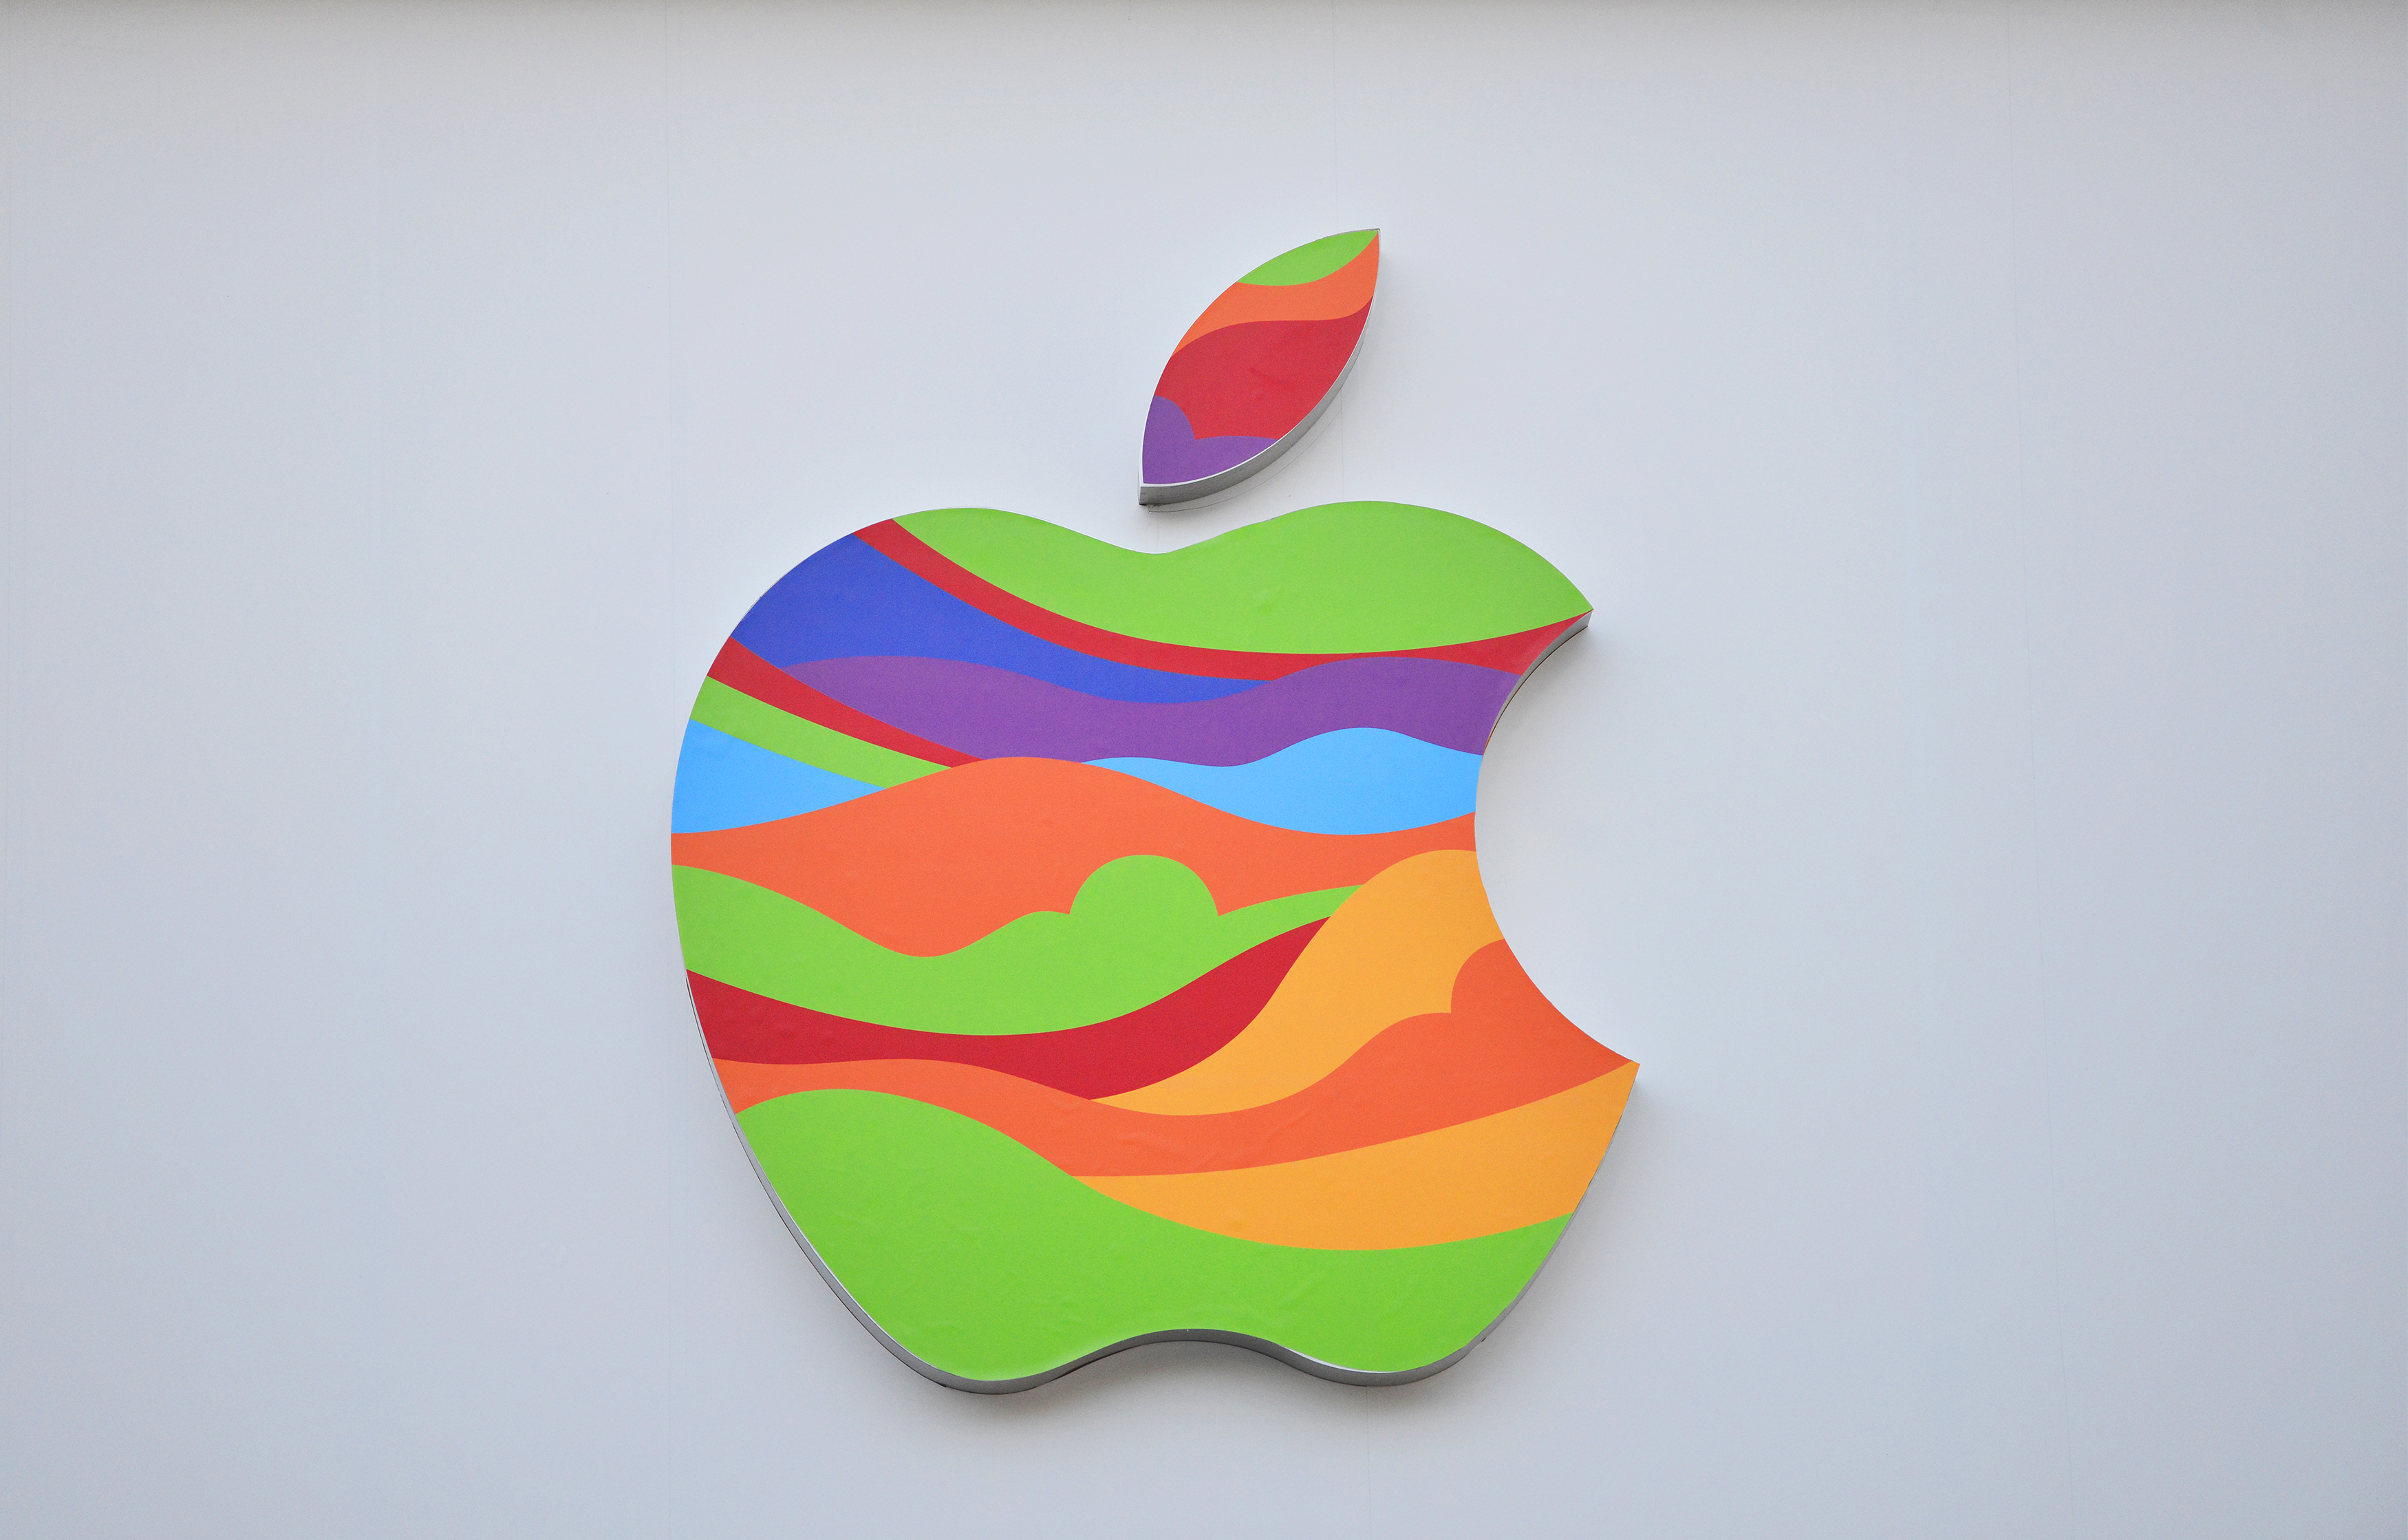 苹果彩色logo将进驻北京-映象新闻-热点-映象网